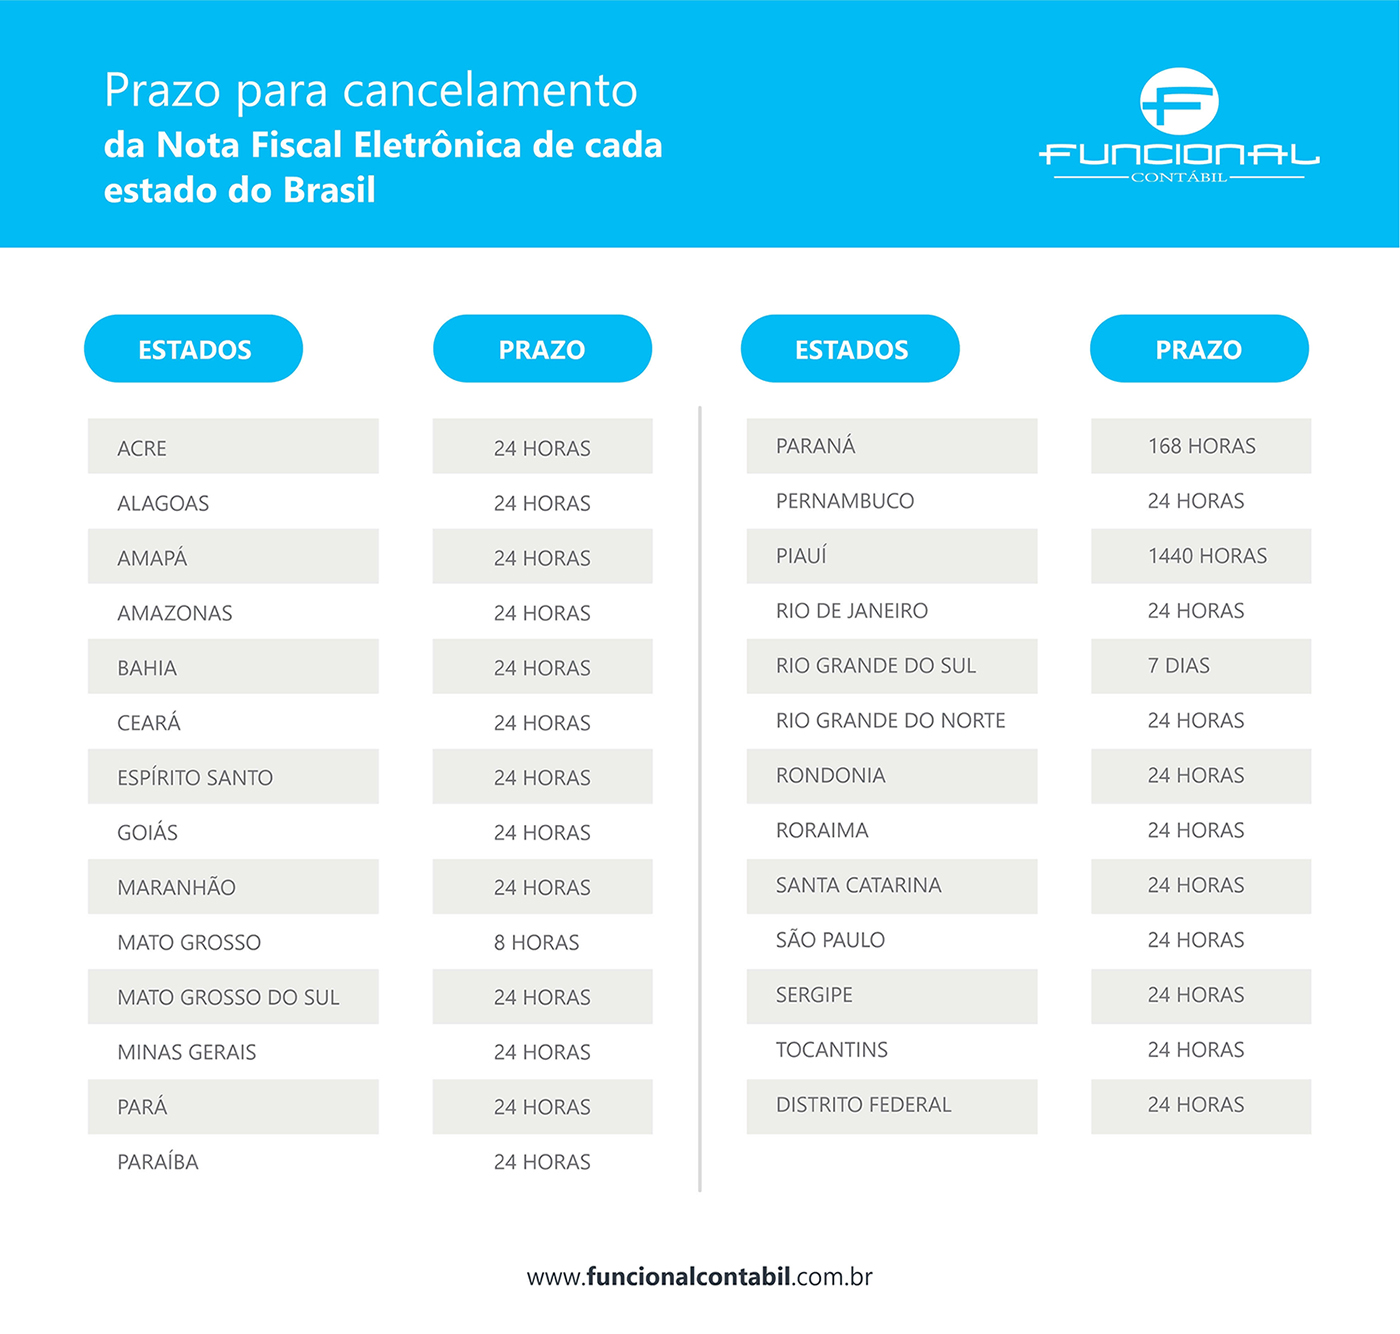 Prazo para cancelamento de Nota Fiscal Eletrônica de cada estado do Brasil